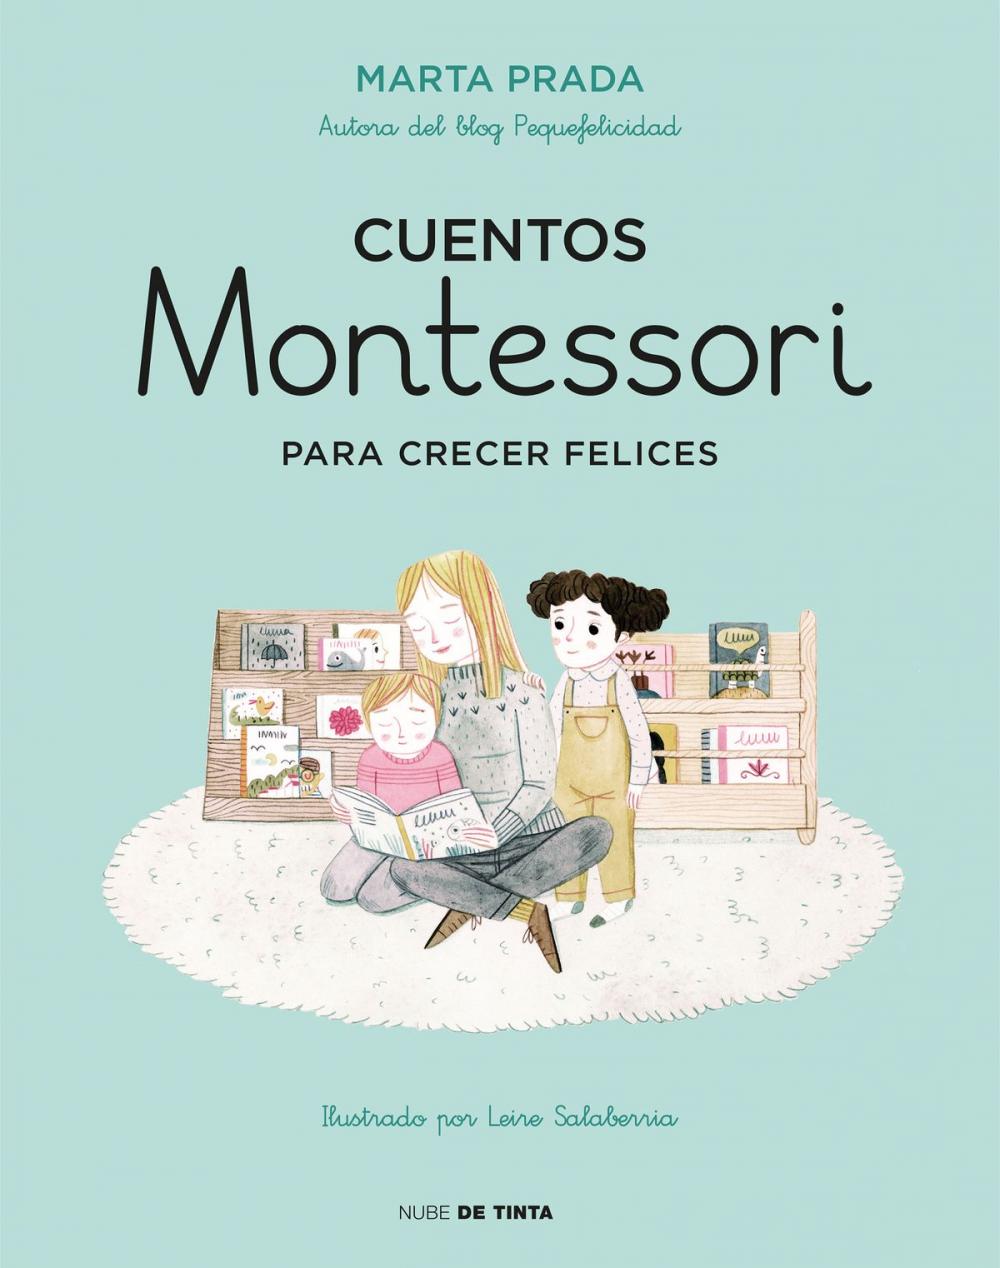 Big bigCover of Cuentos Montessori para crecer felices